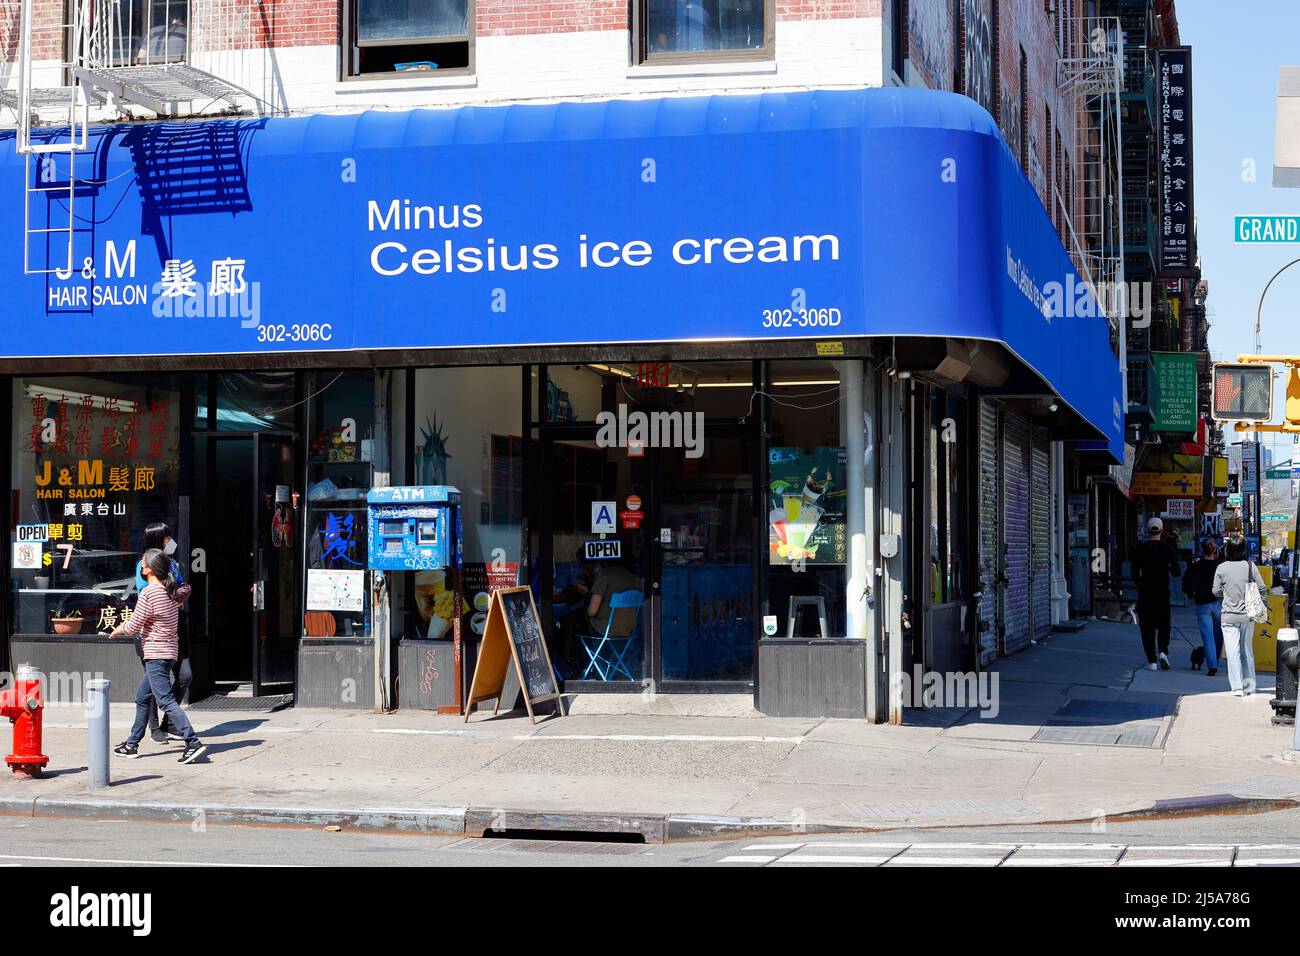 Minus Celsius Ice Cream, 302 Grand St, New York, NYC Foto von einem Eisladen in der Lower East Side, Chinatown. Stockfoto